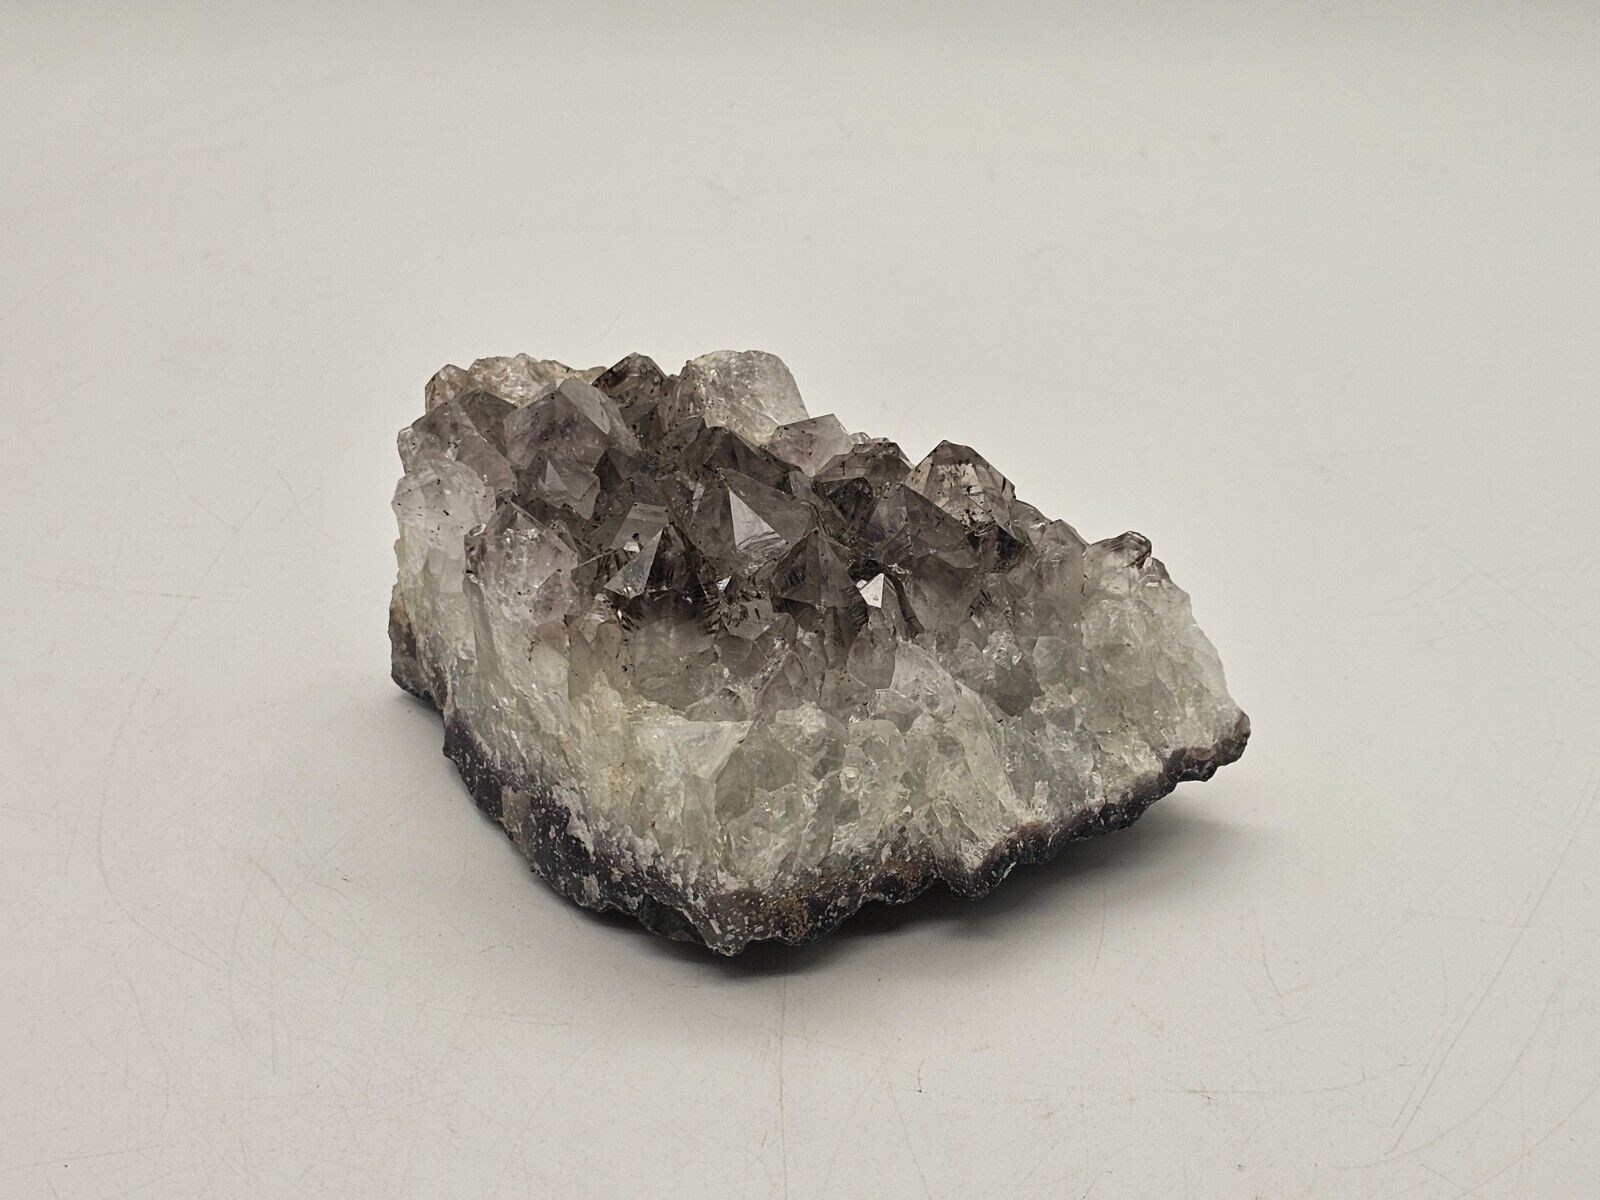 CORONADITE on Quartz - Mex-Tex Mine Bingham 2 lb 3.4oz